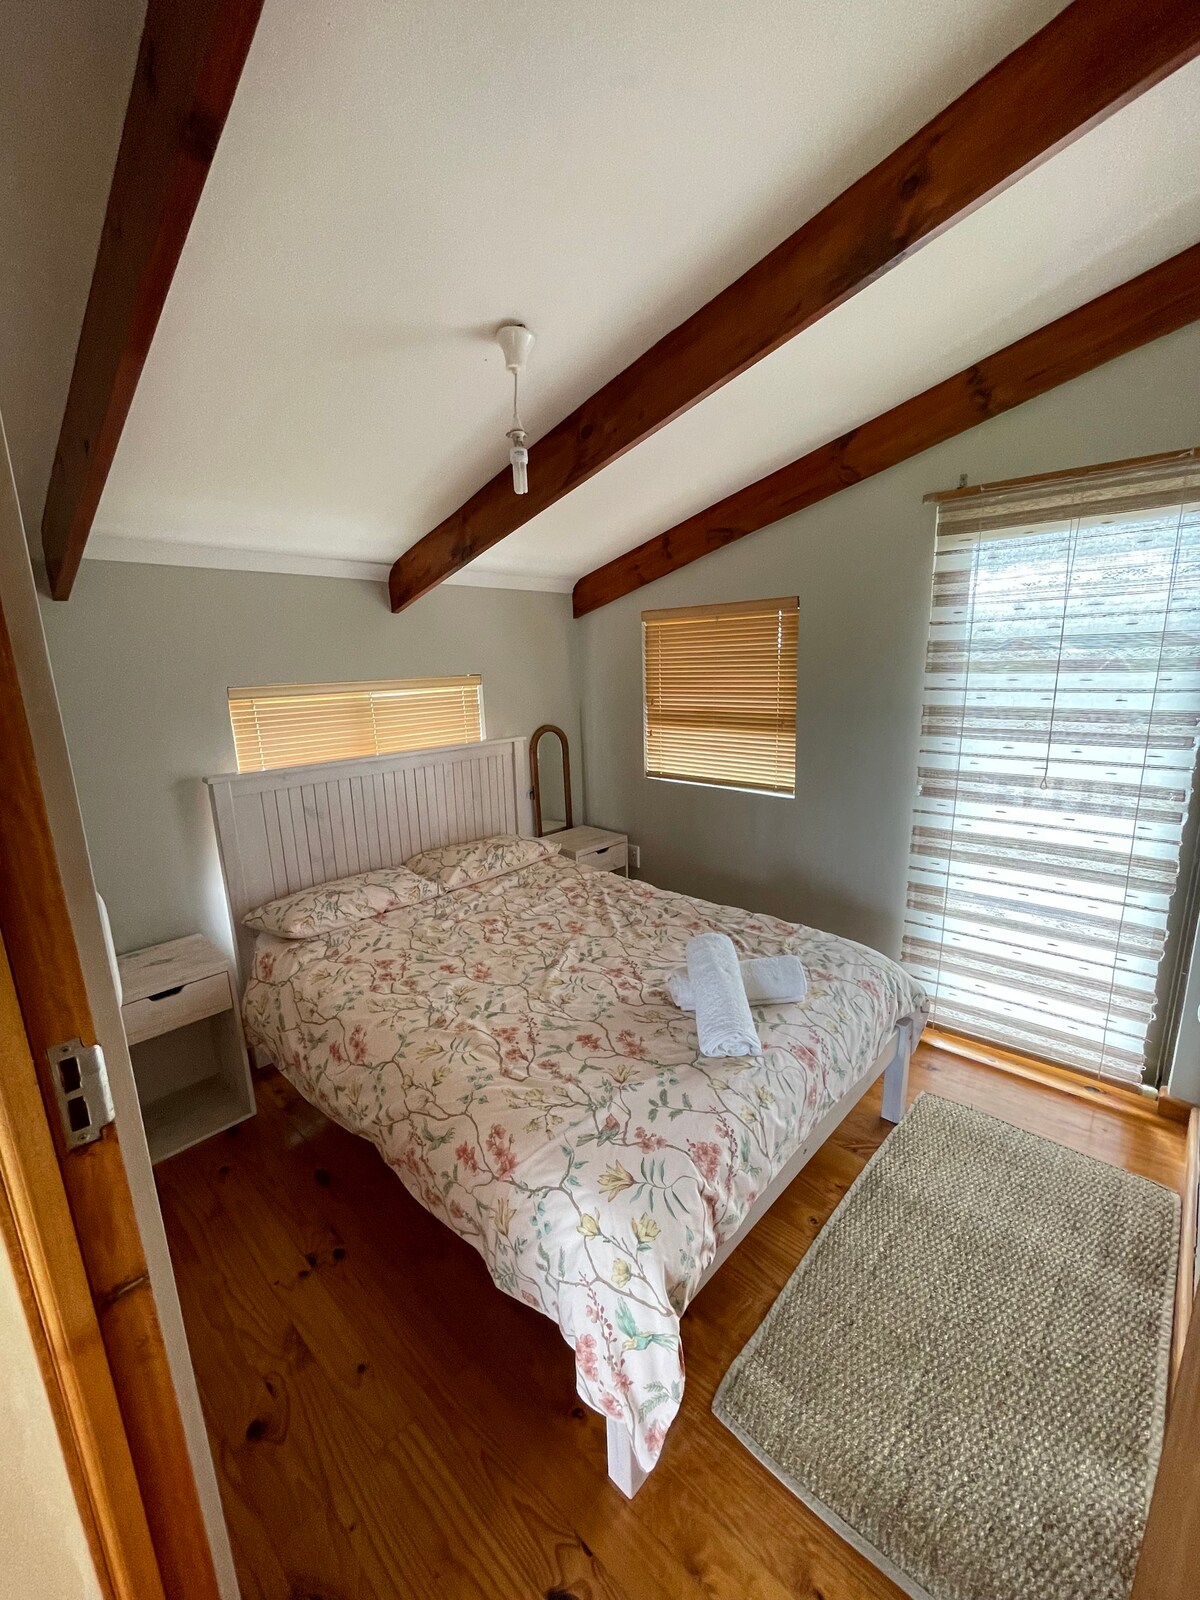 Cheerful 3-bedroom cabin